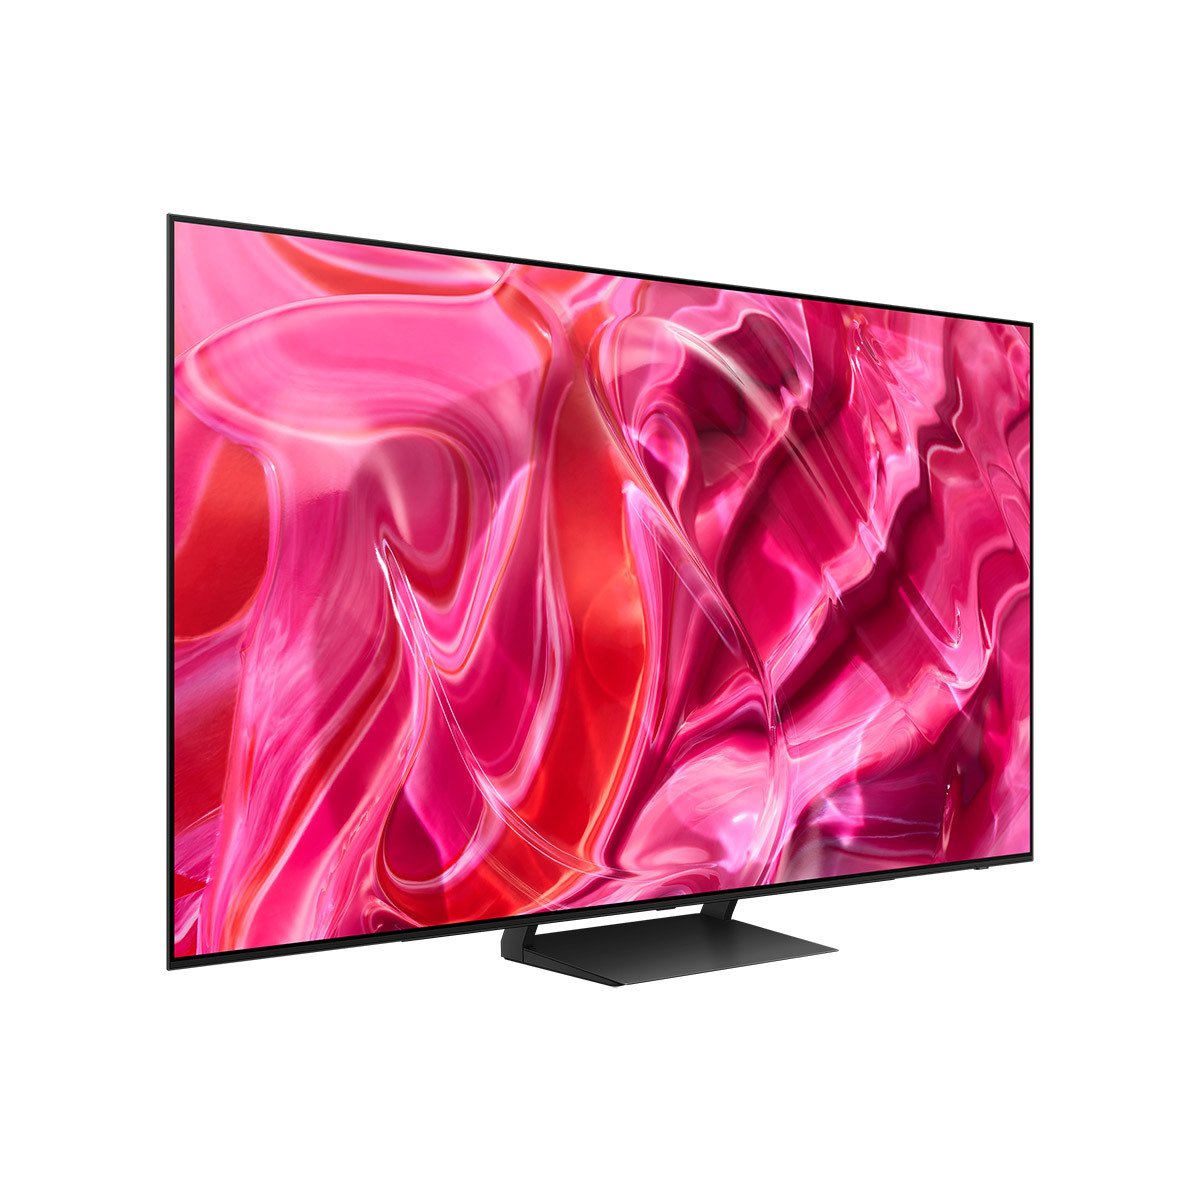 삼성 OLED TV KQ65SC90AFXKR 163cm (65) + S50B